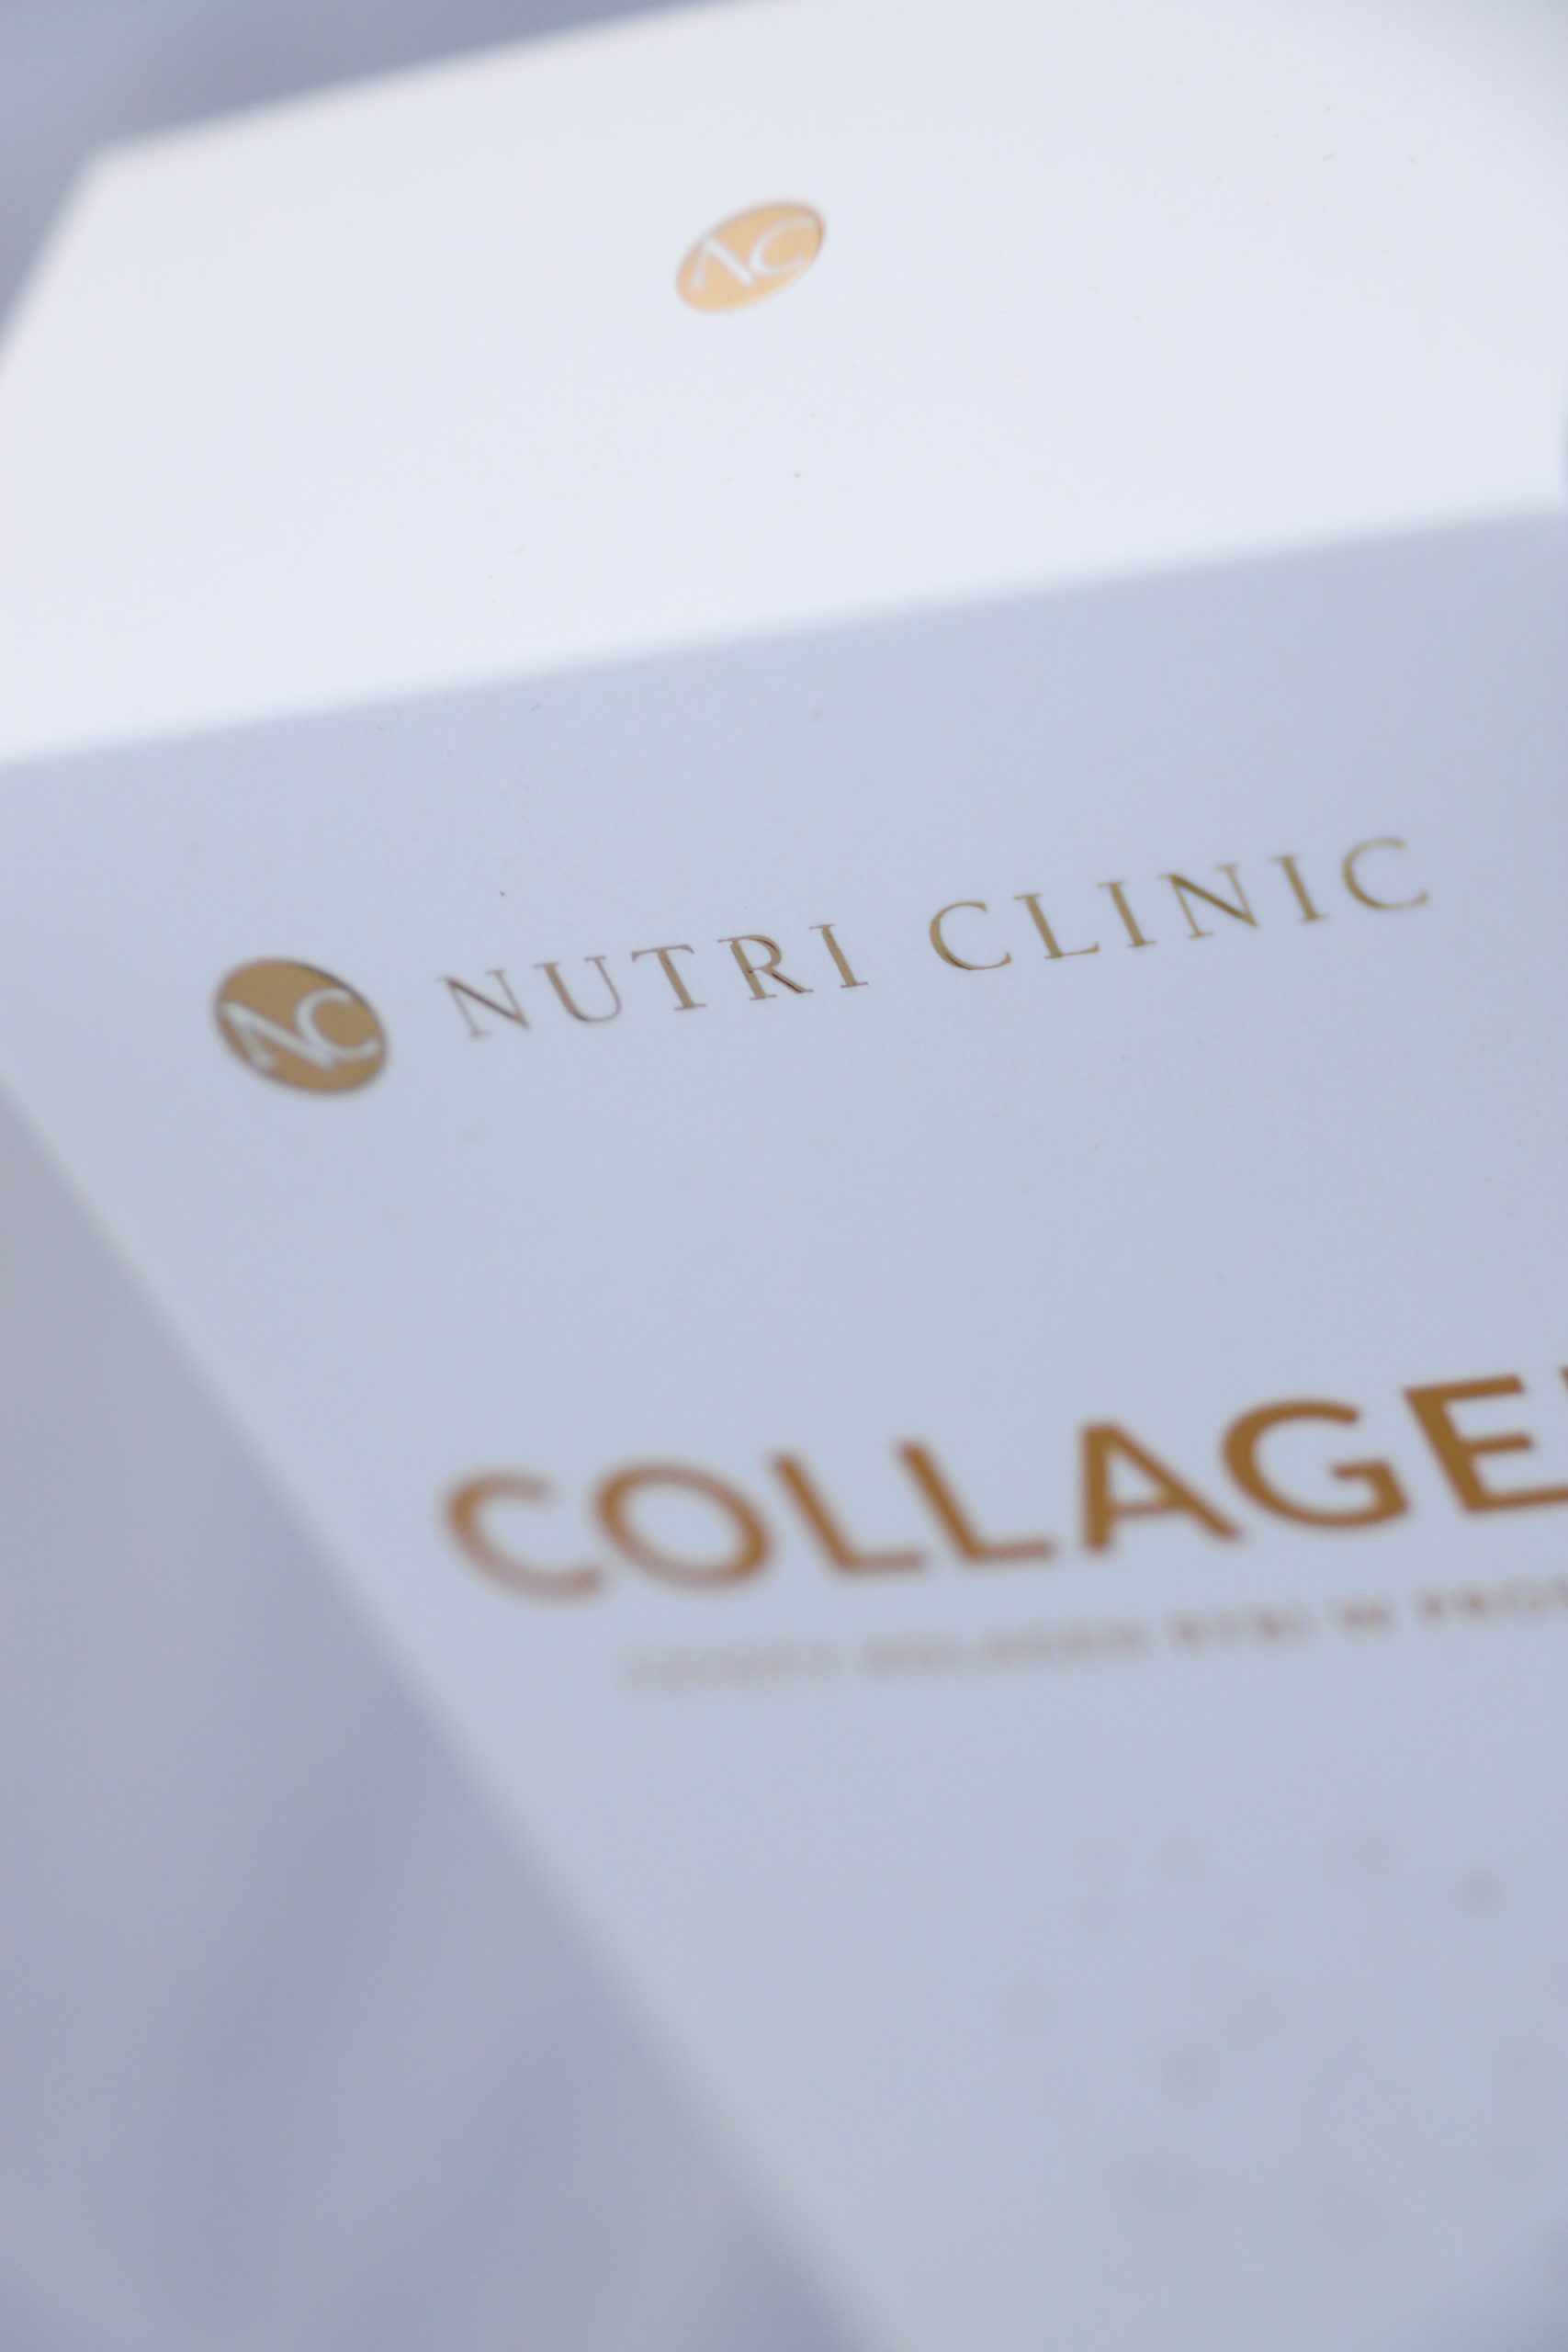 Podejmij wyzwanie Kolagenowy challenge Nutri Clinic